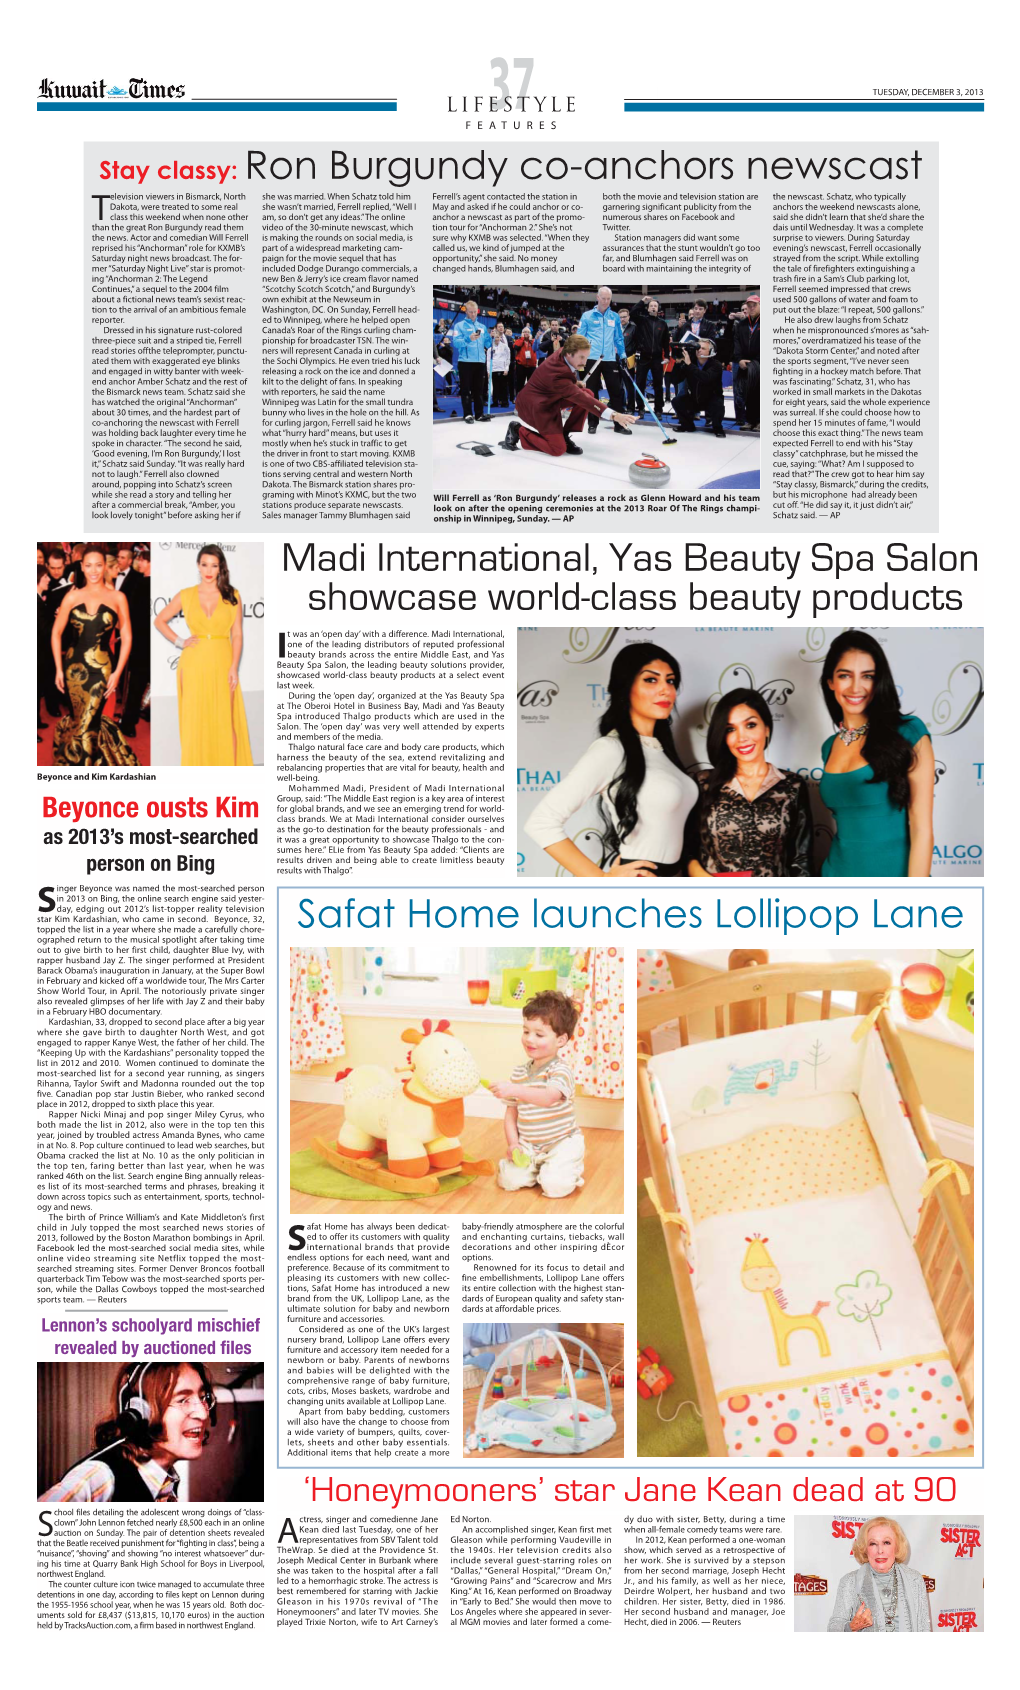 Madi International, Yas Beauty Spa Salon Showcase World-Class Beauty Products